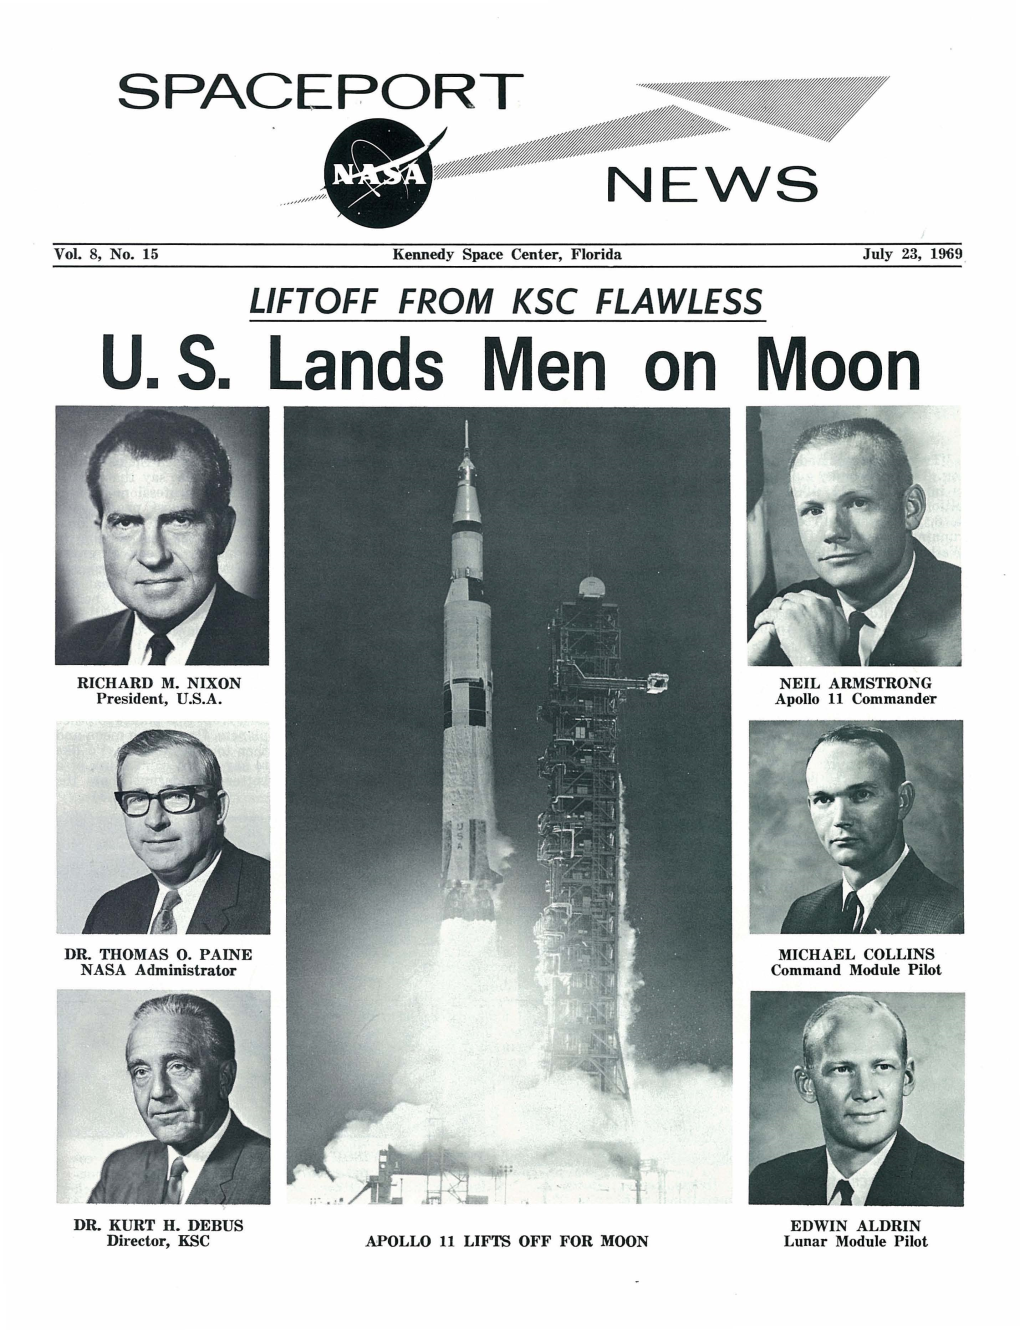 Spaceport News Vol.8, No.15 Jul.23, 1969